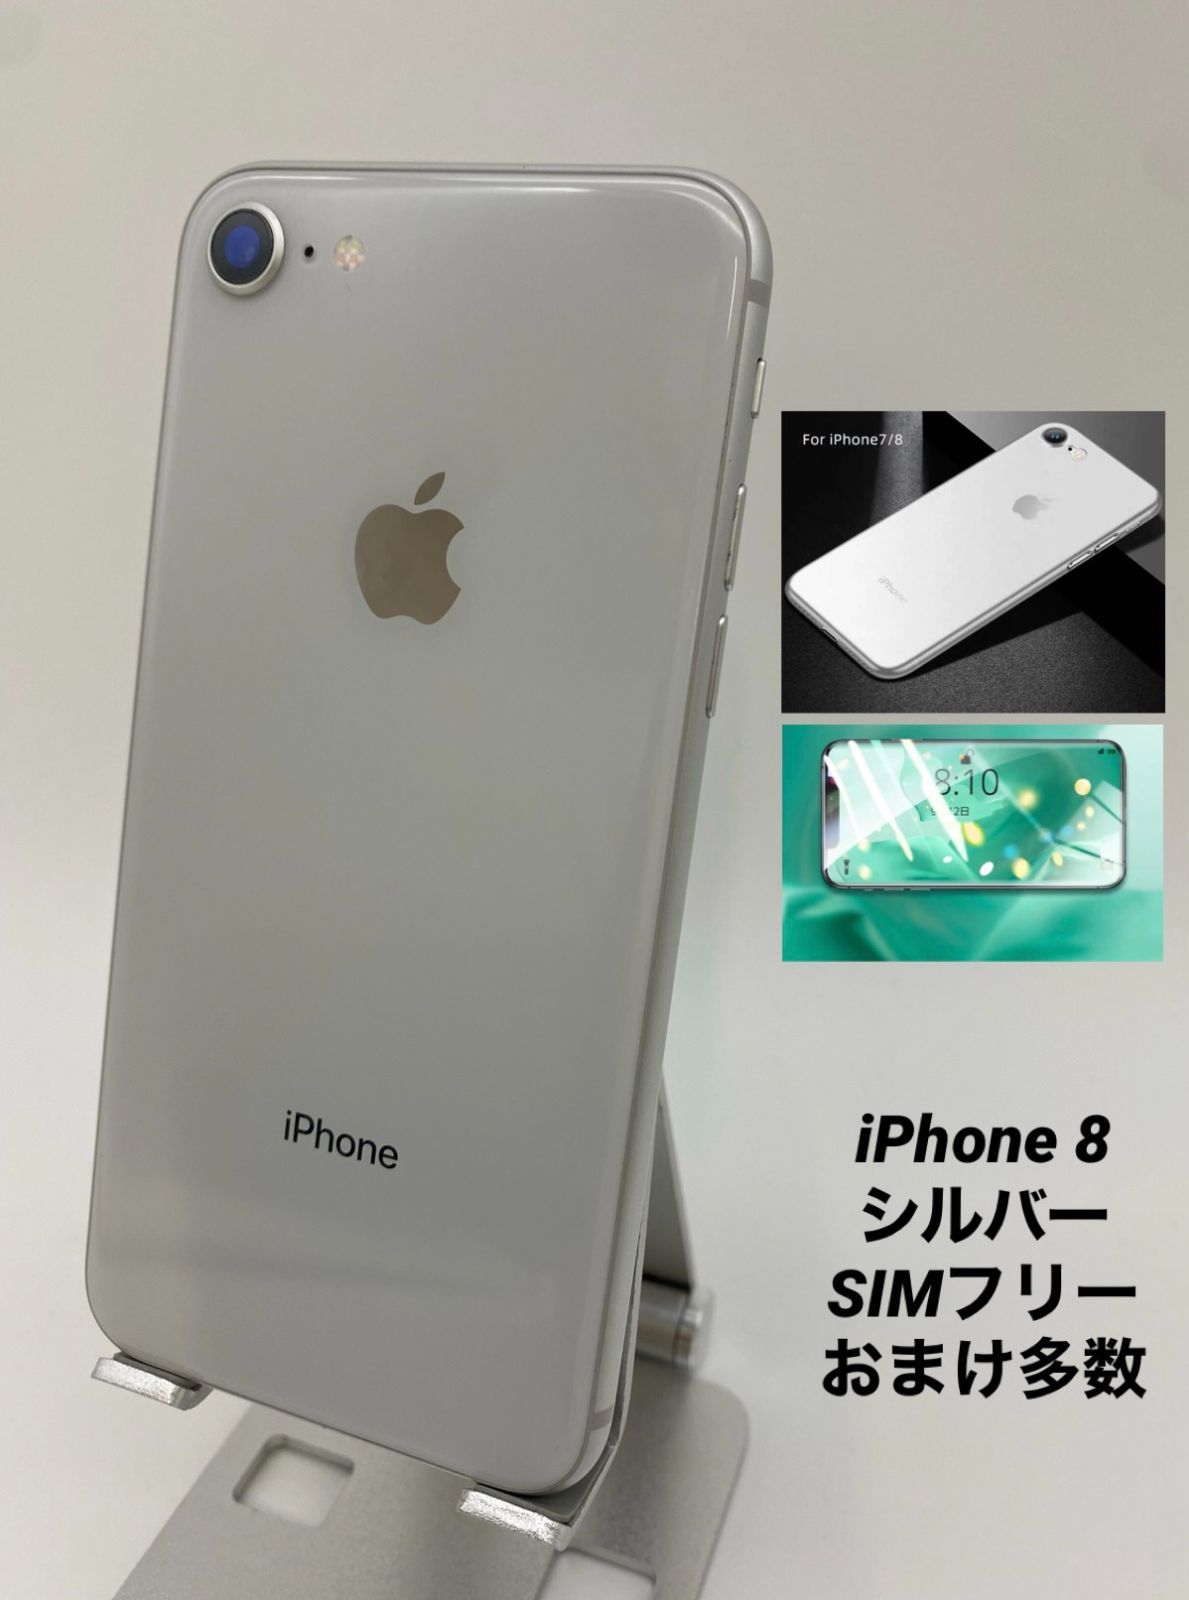 【日本盤】iPhone8 64GB シルバー/シムフリー/大容量新品BT100% 8016 スマートフォン本体